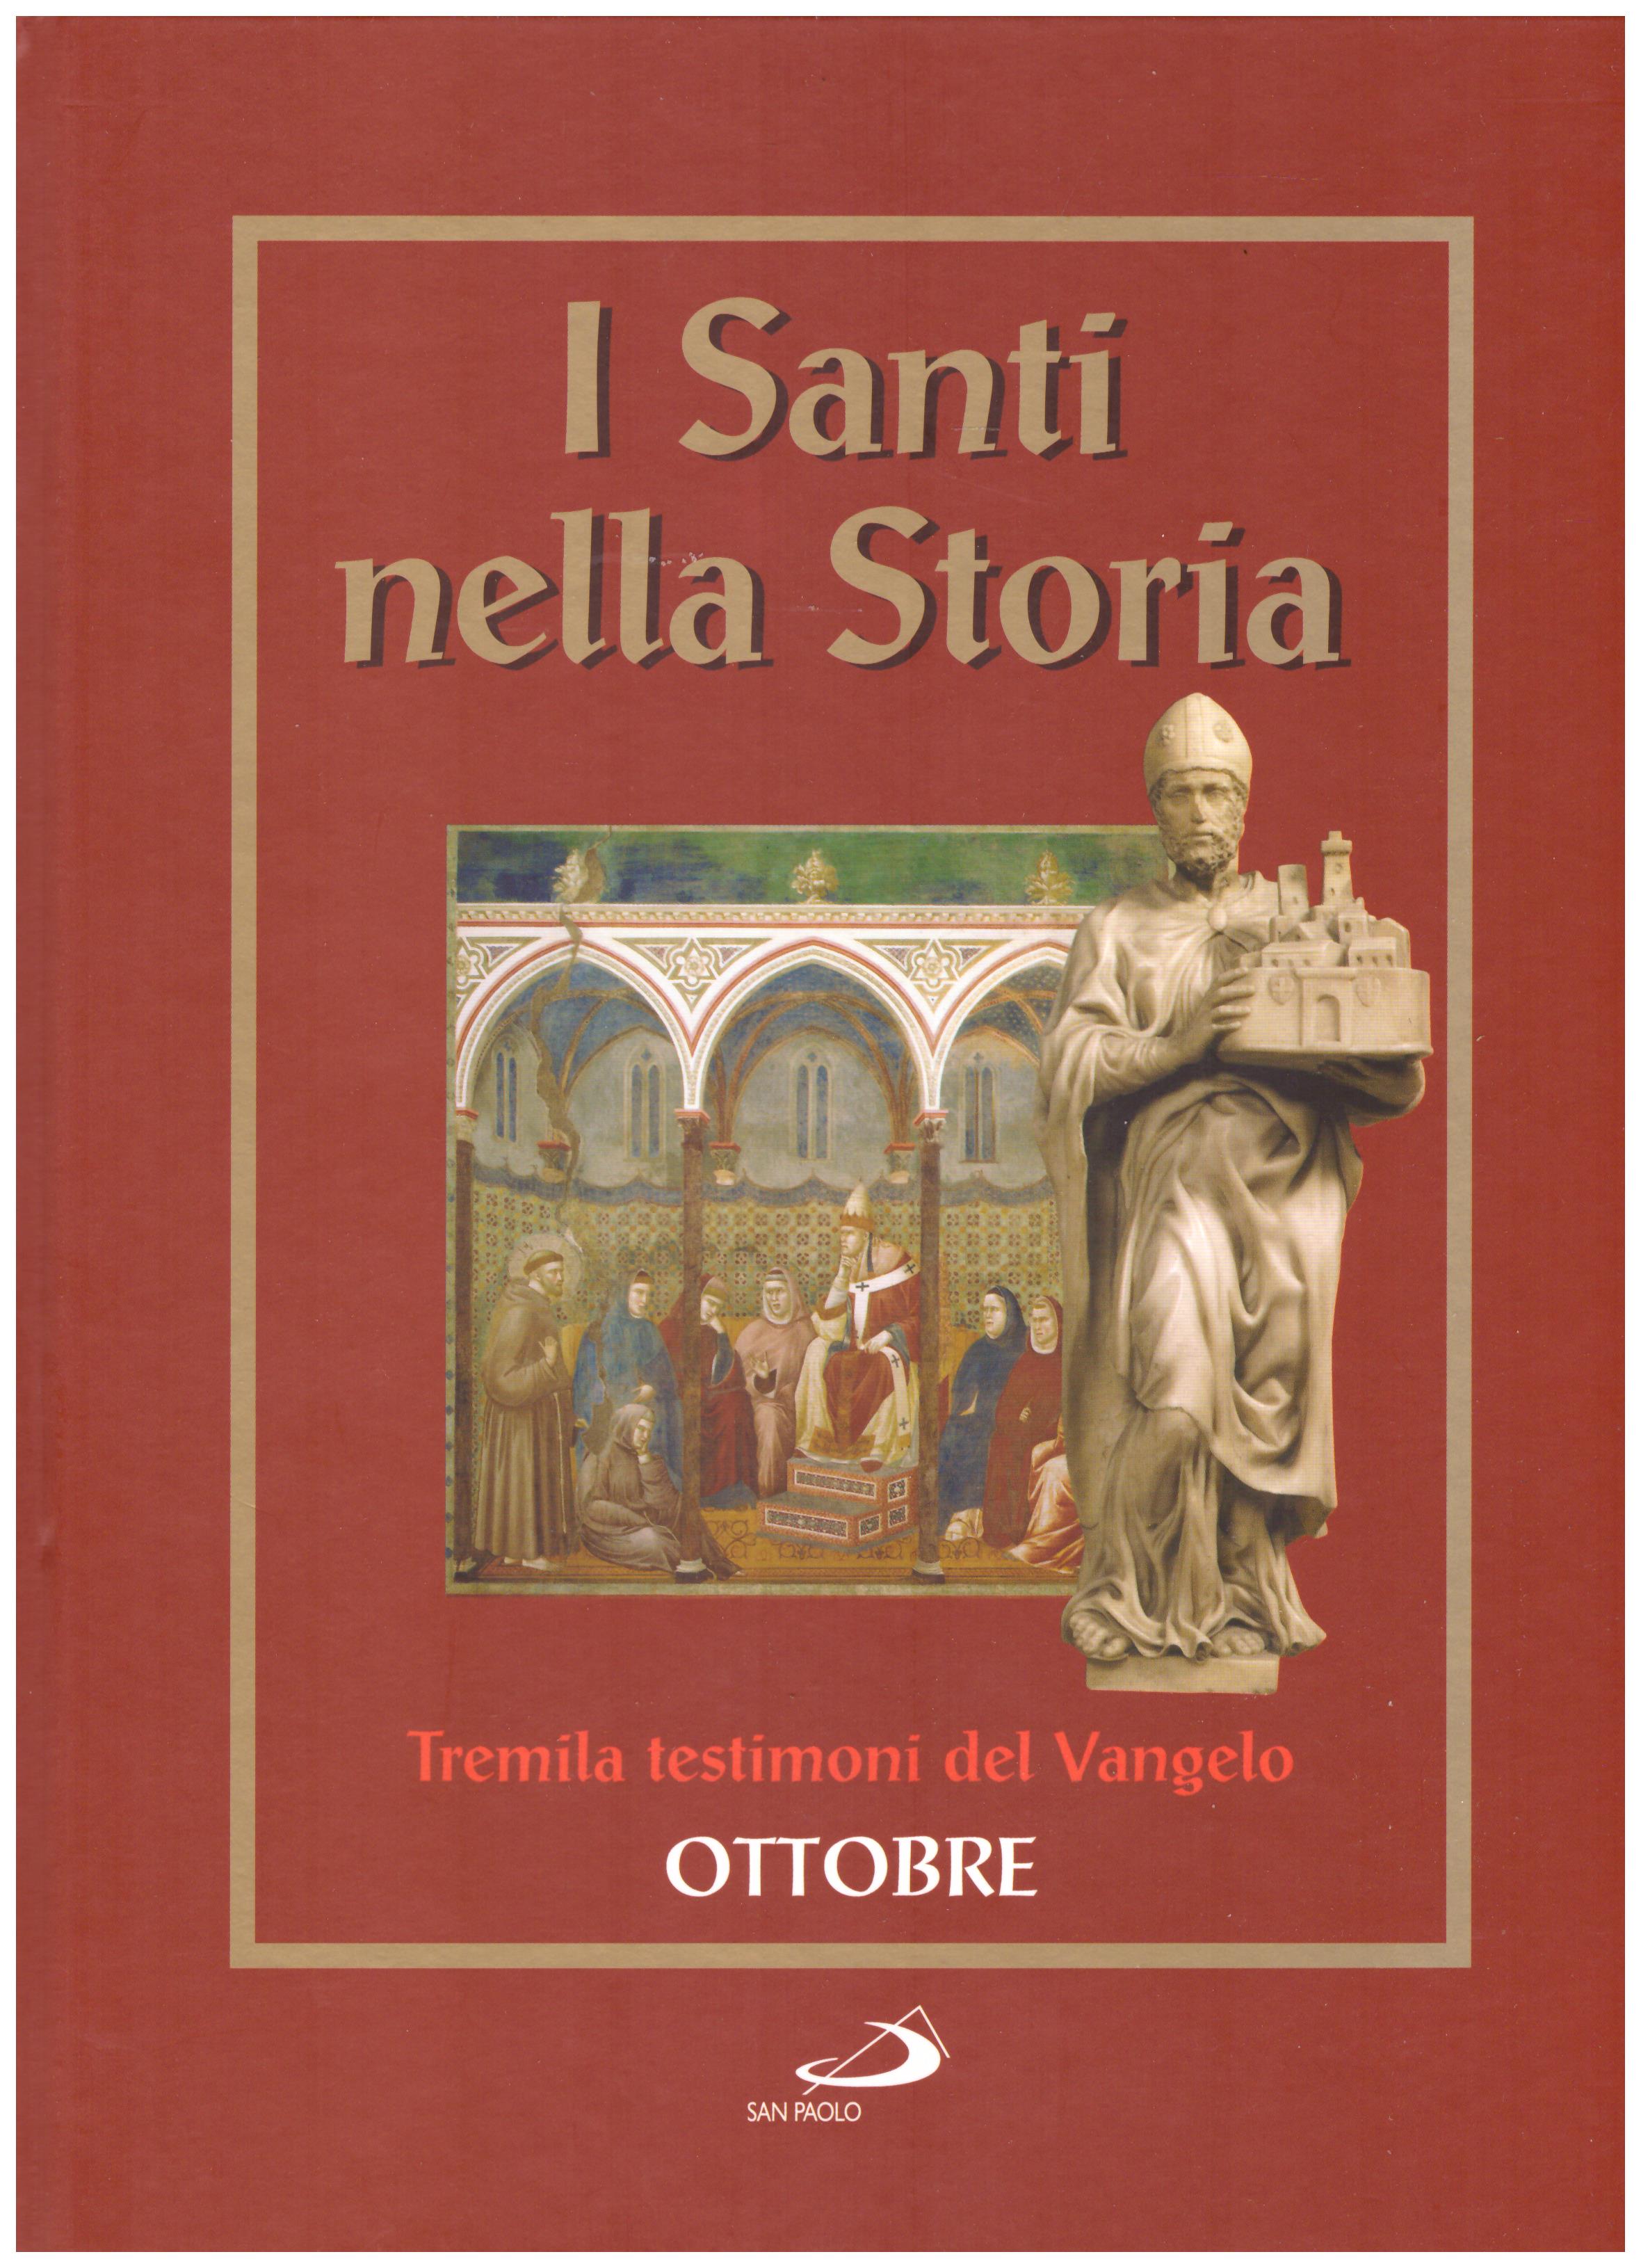 Titolo: I santi nella storia, tremila testimoni del Vangelo, Ottobre  Autore : AA.VV.   Editore: San Paolo 2006